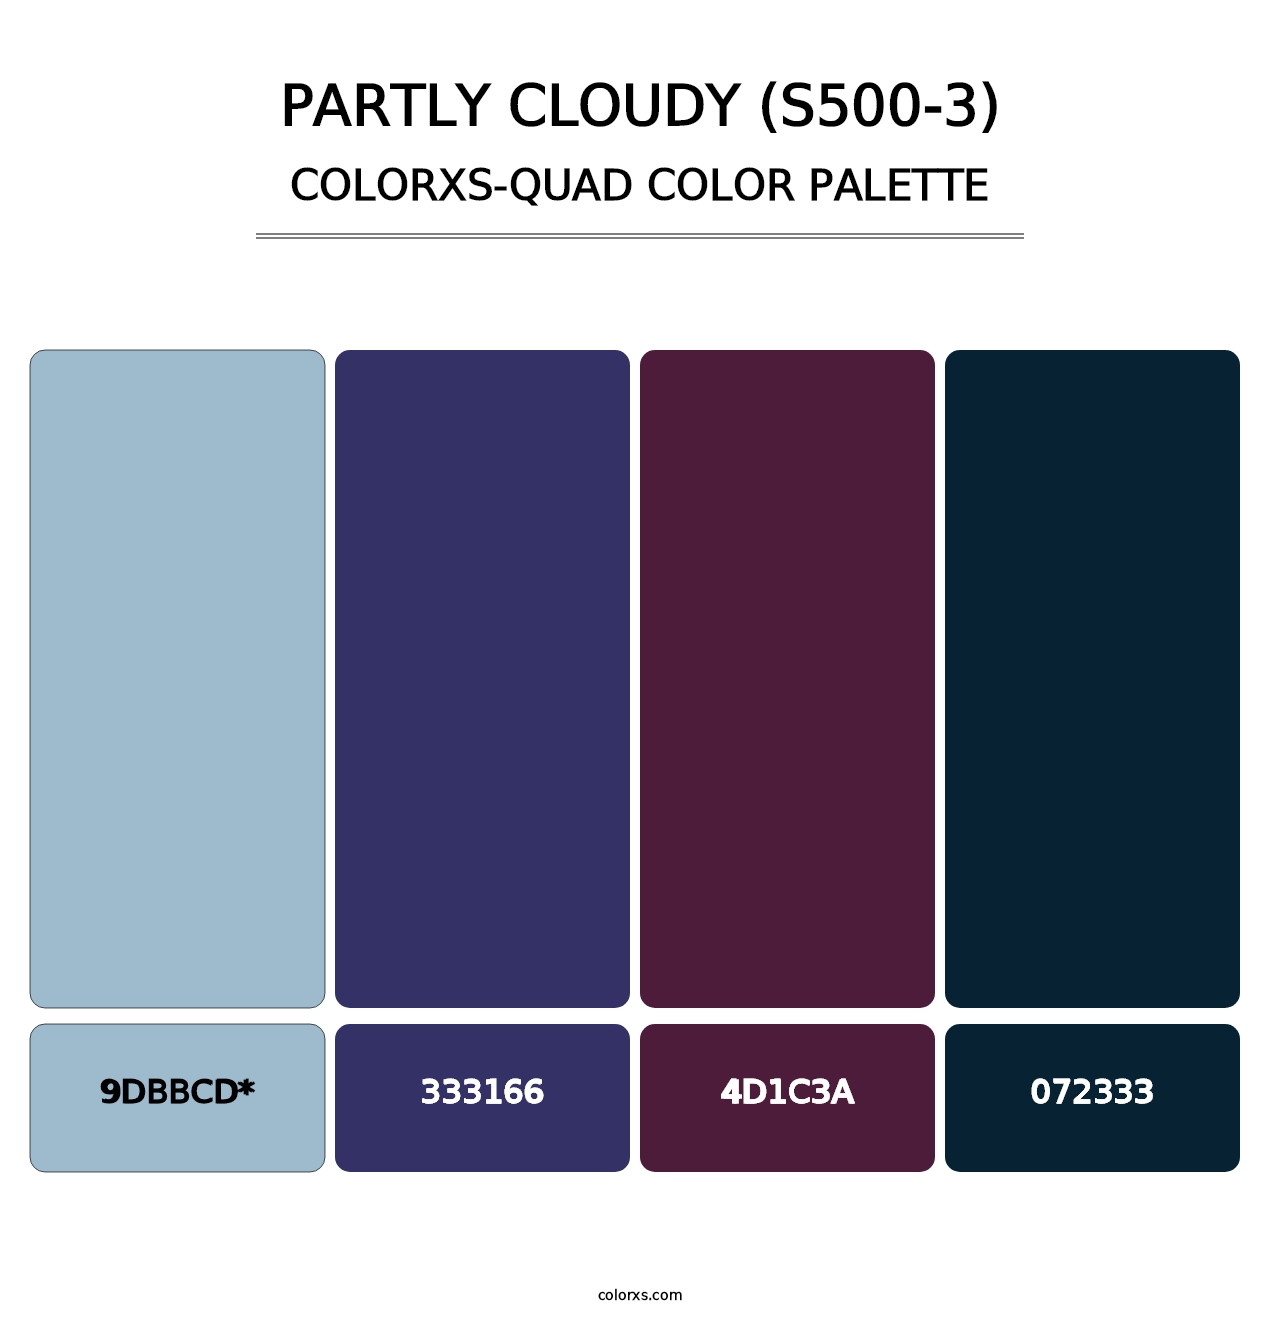 Partly Cloudy (S500-3) - Colorxs Quad Palette